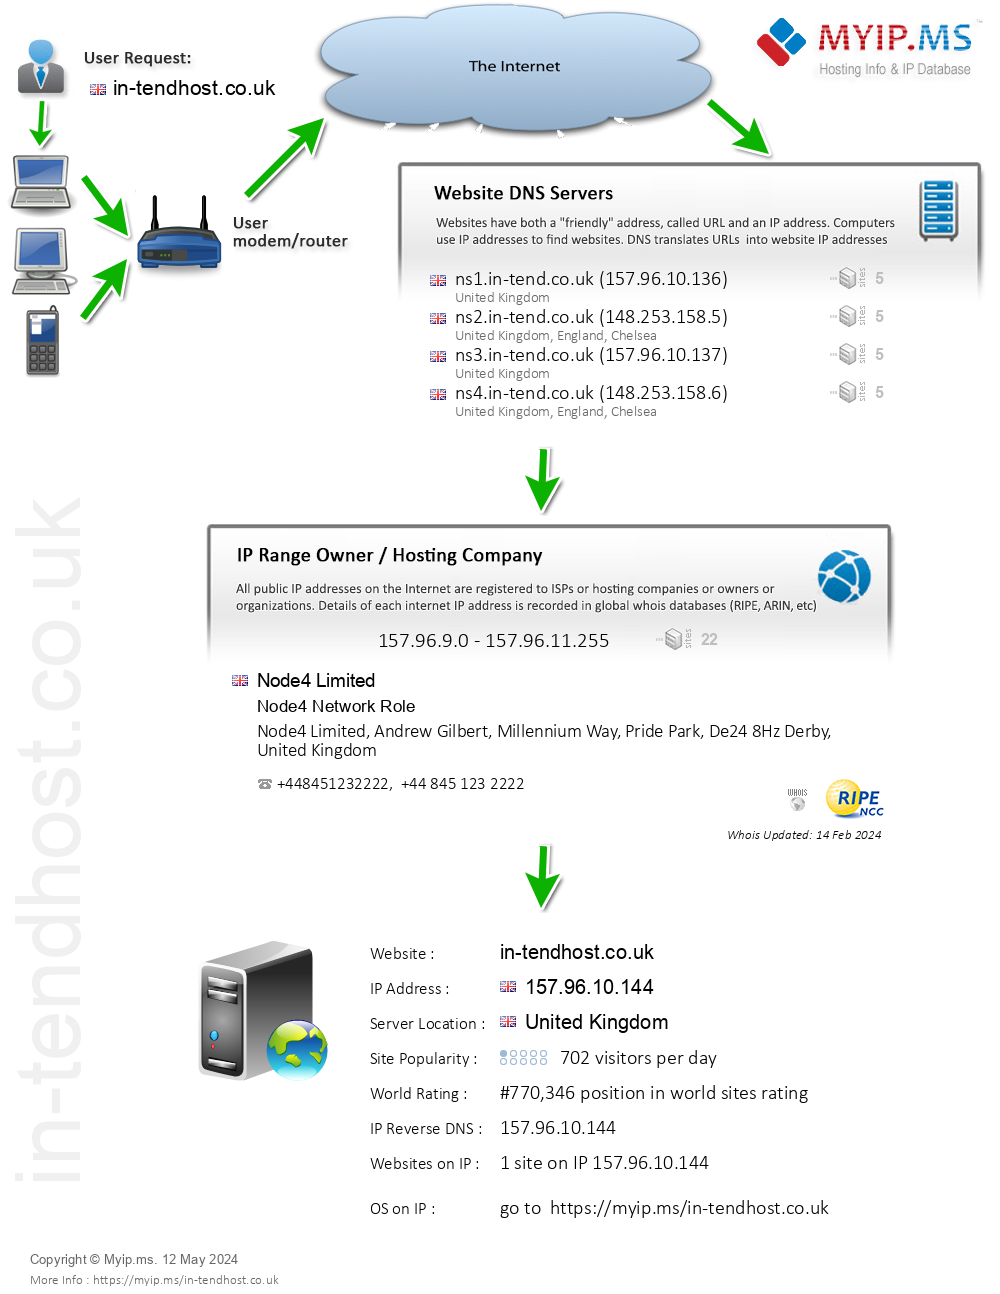 In-tendhost.co.uk - Website Hosting Visual IP Diagram